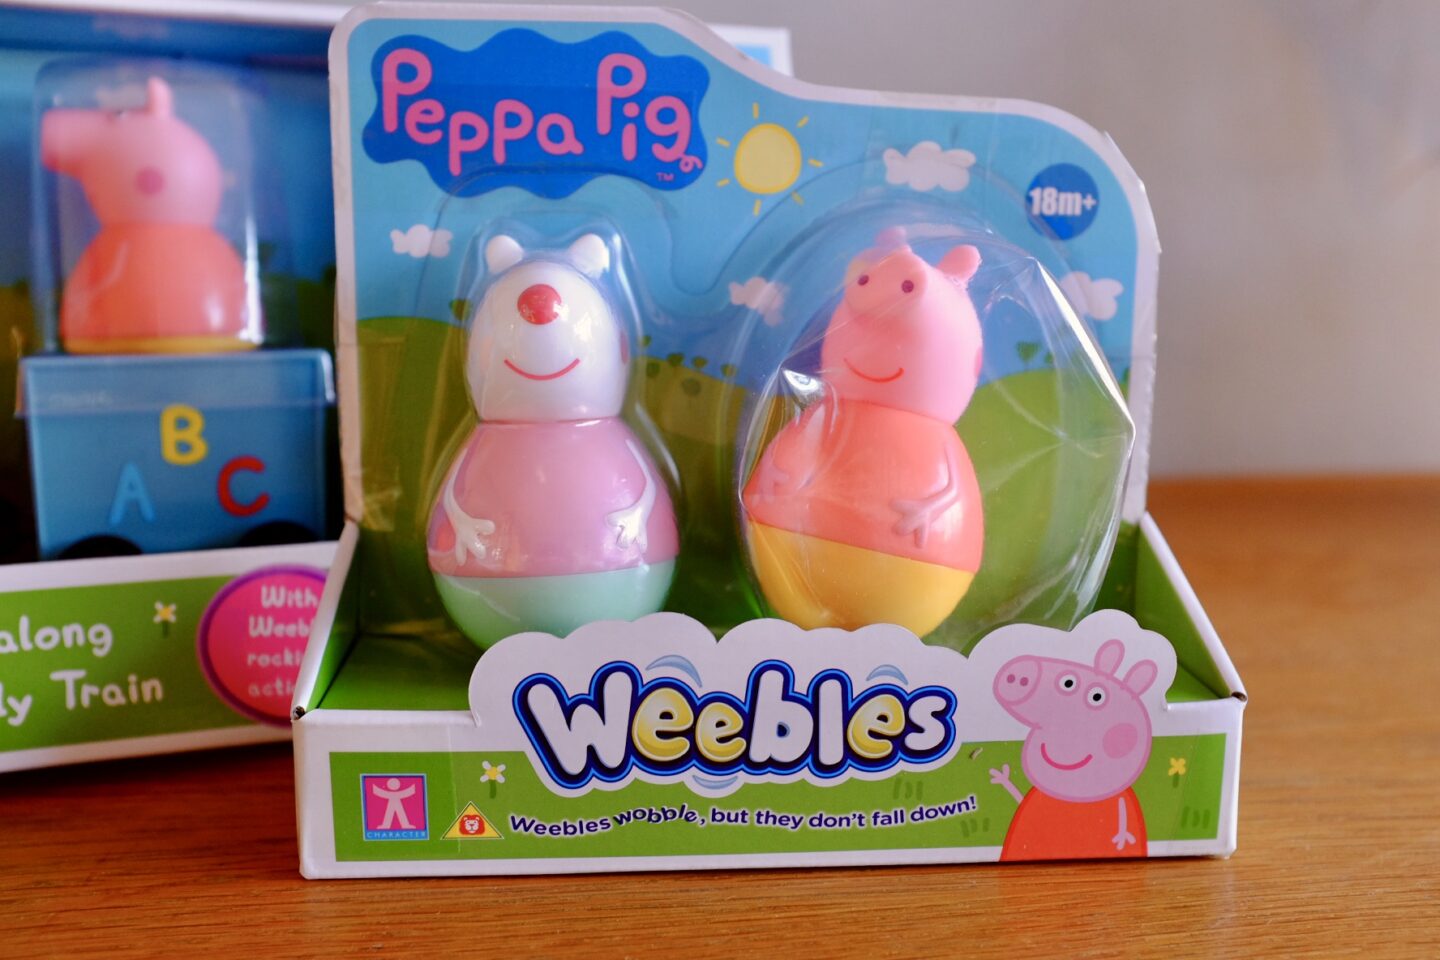 Peppa Pig Weebles Figures